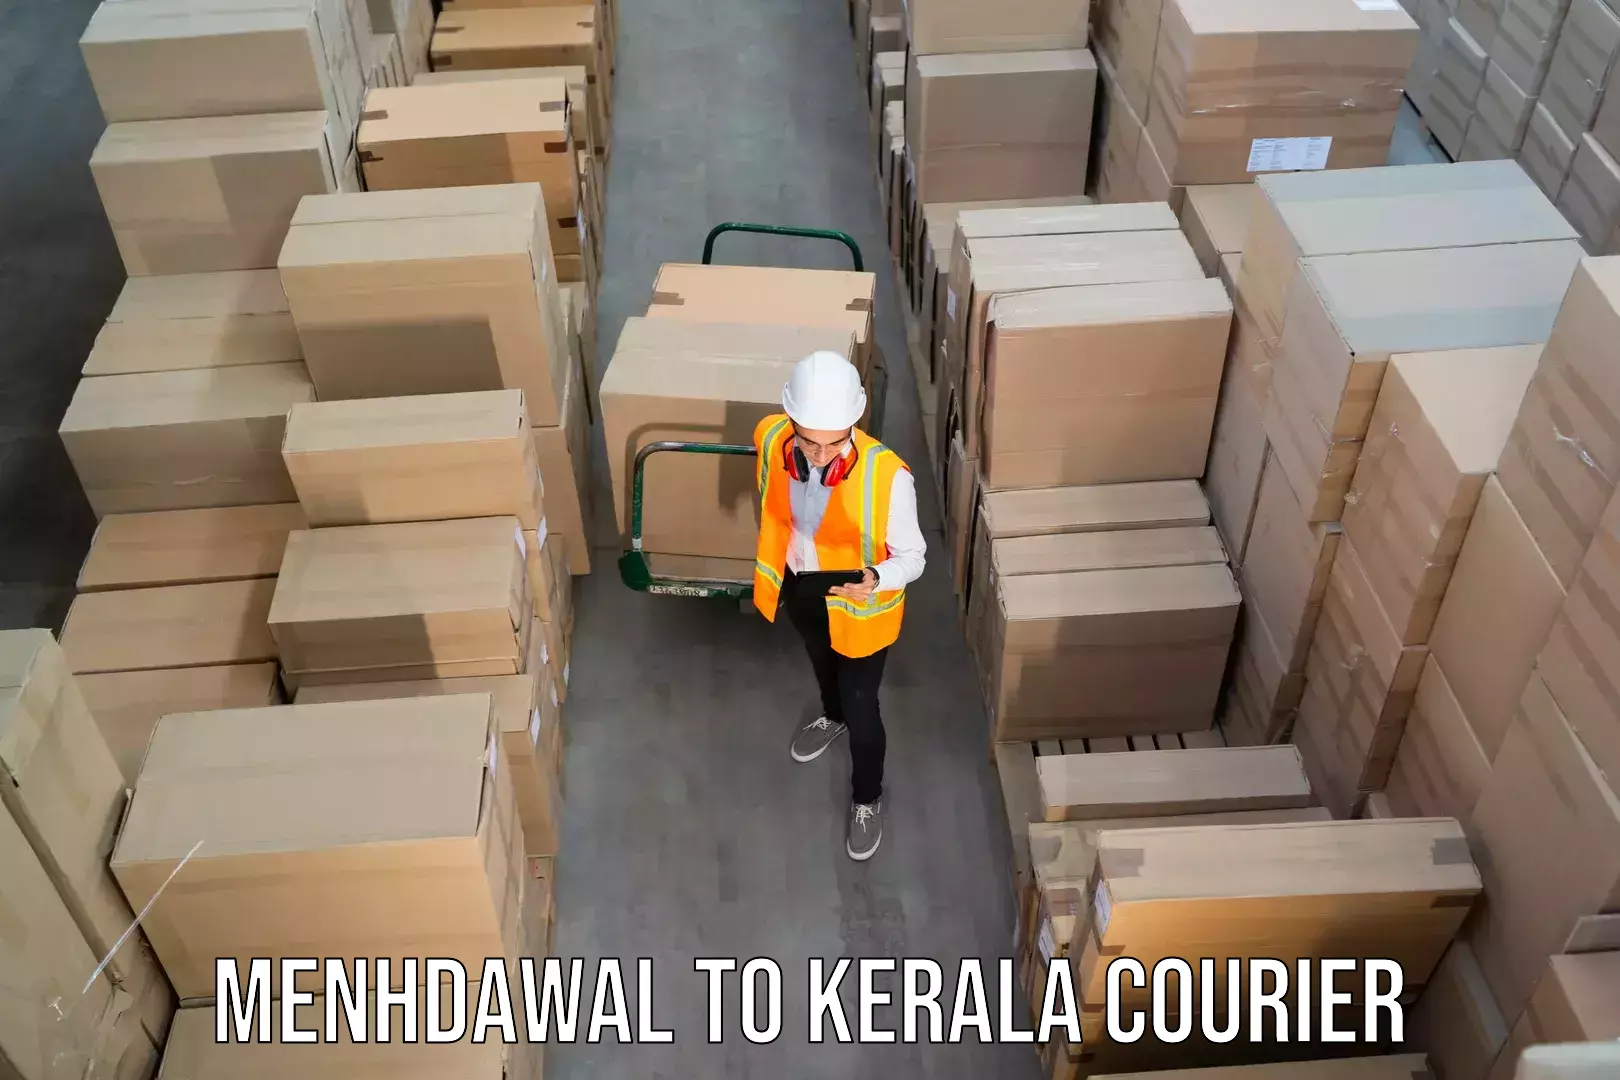 Door-to-door shipment Menhdawal to Perambra